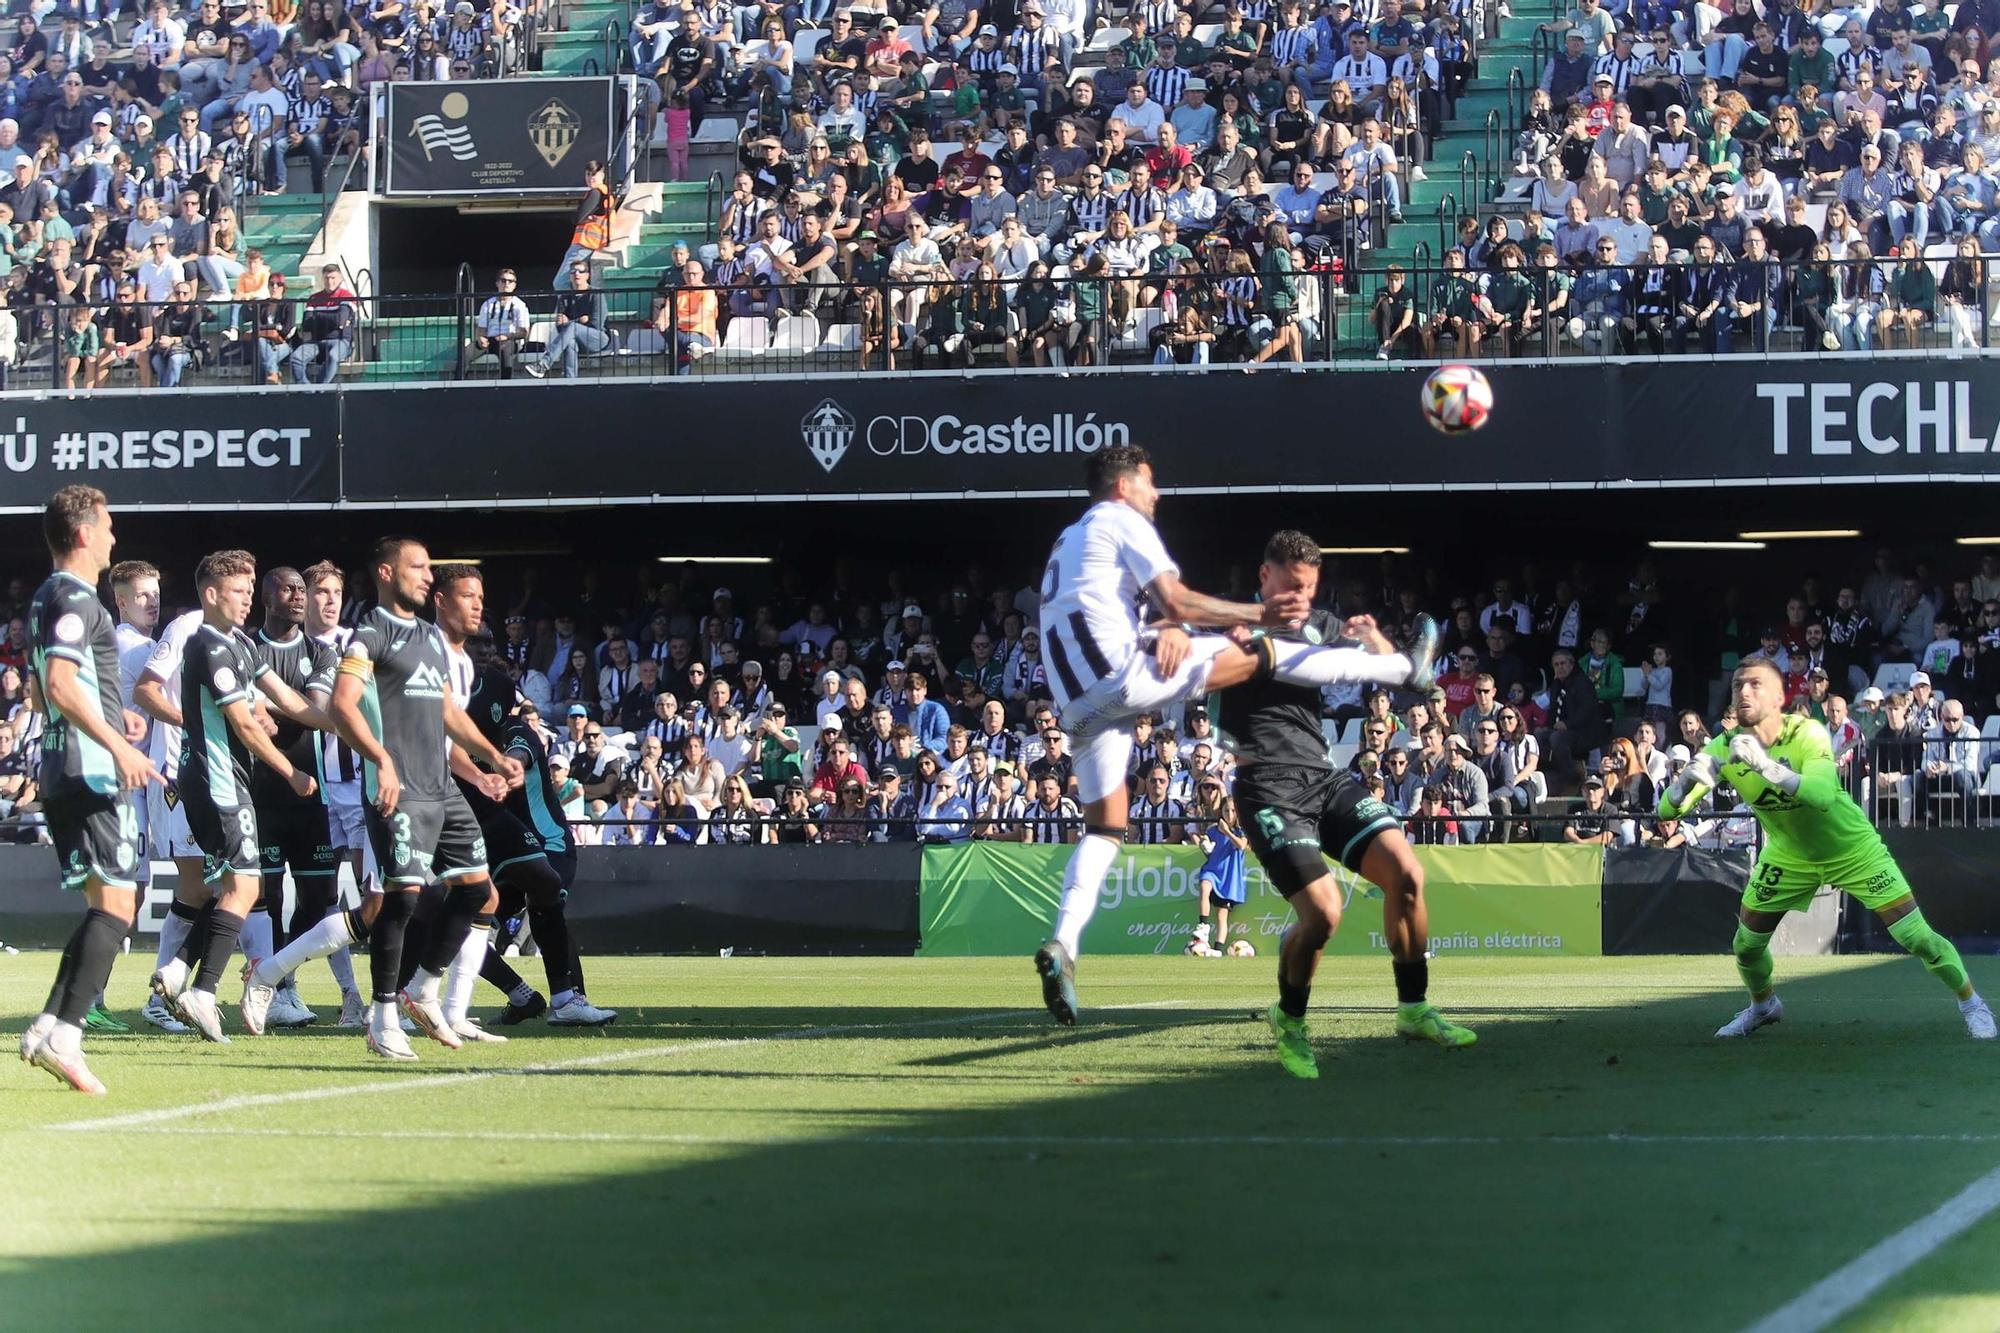 Galería | La victoria contra el Atlético Baleares, con más de 12.000 espectadores, en imágenes